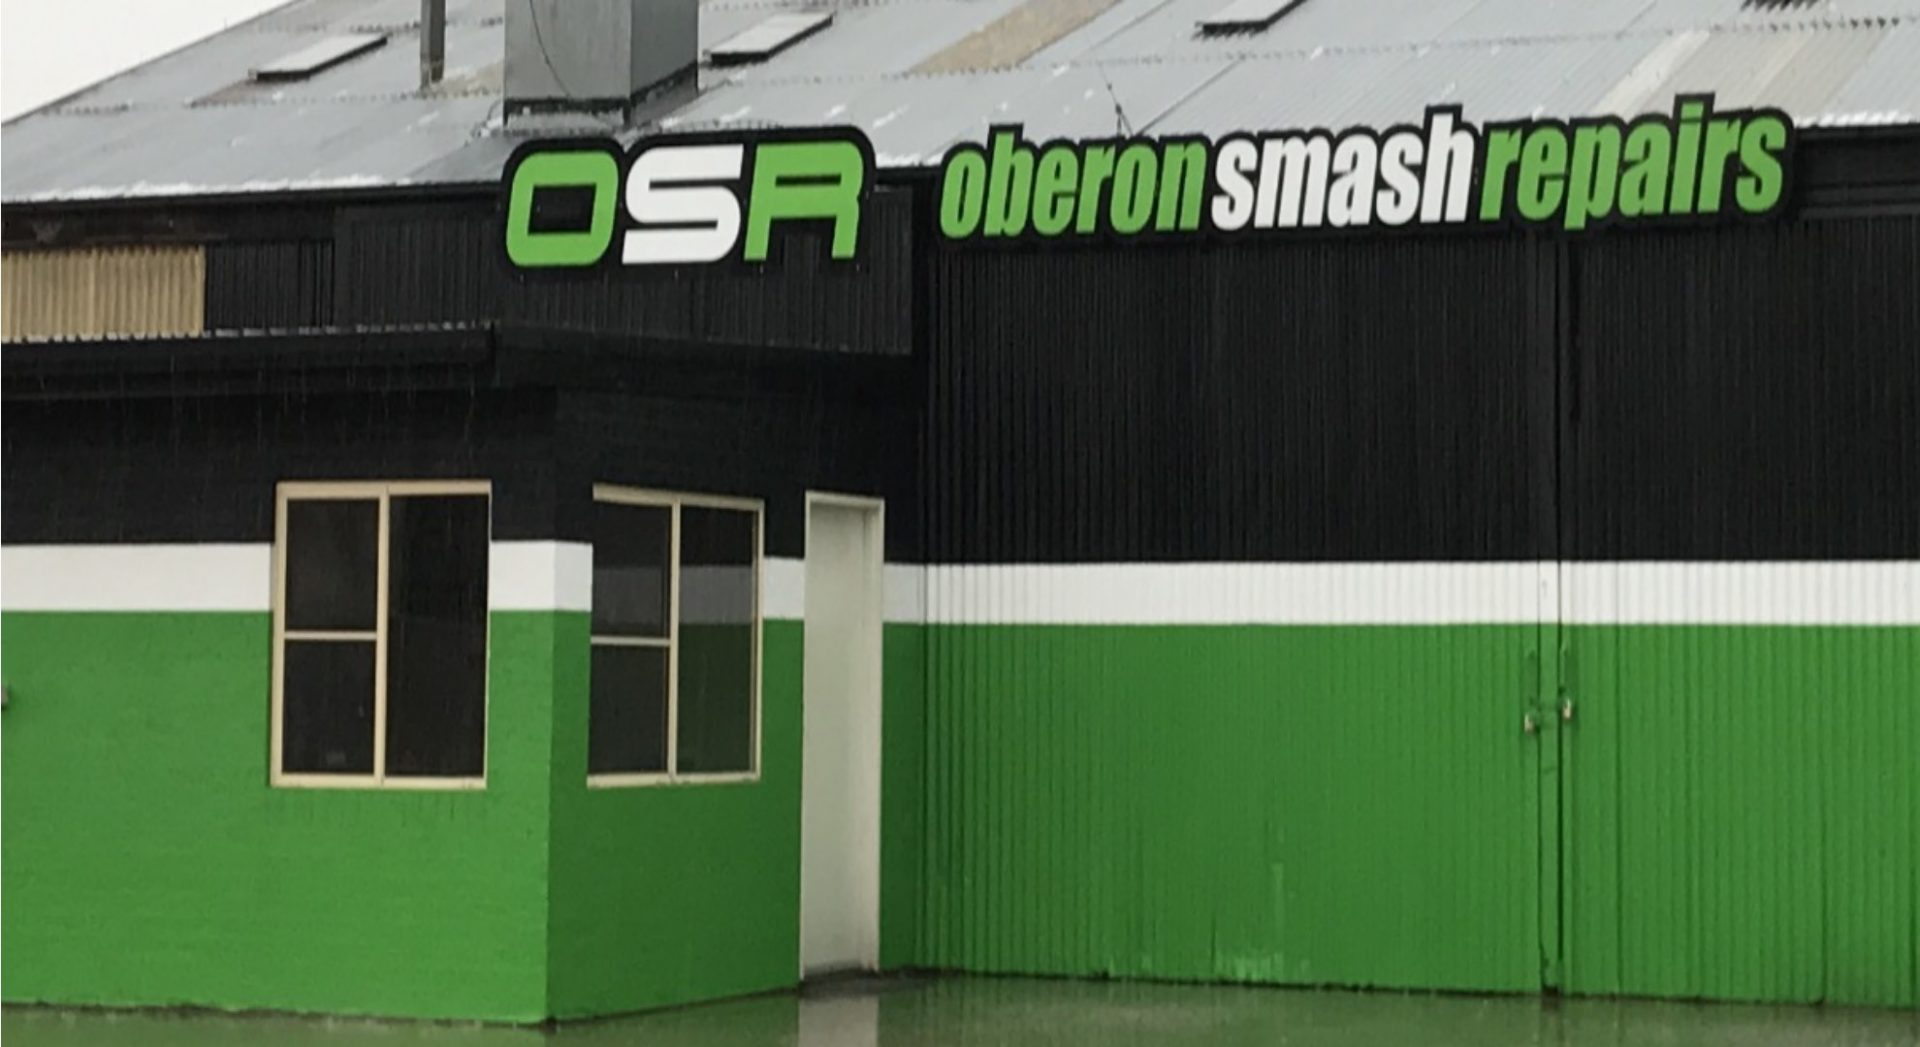 Oberon Smash Repairs